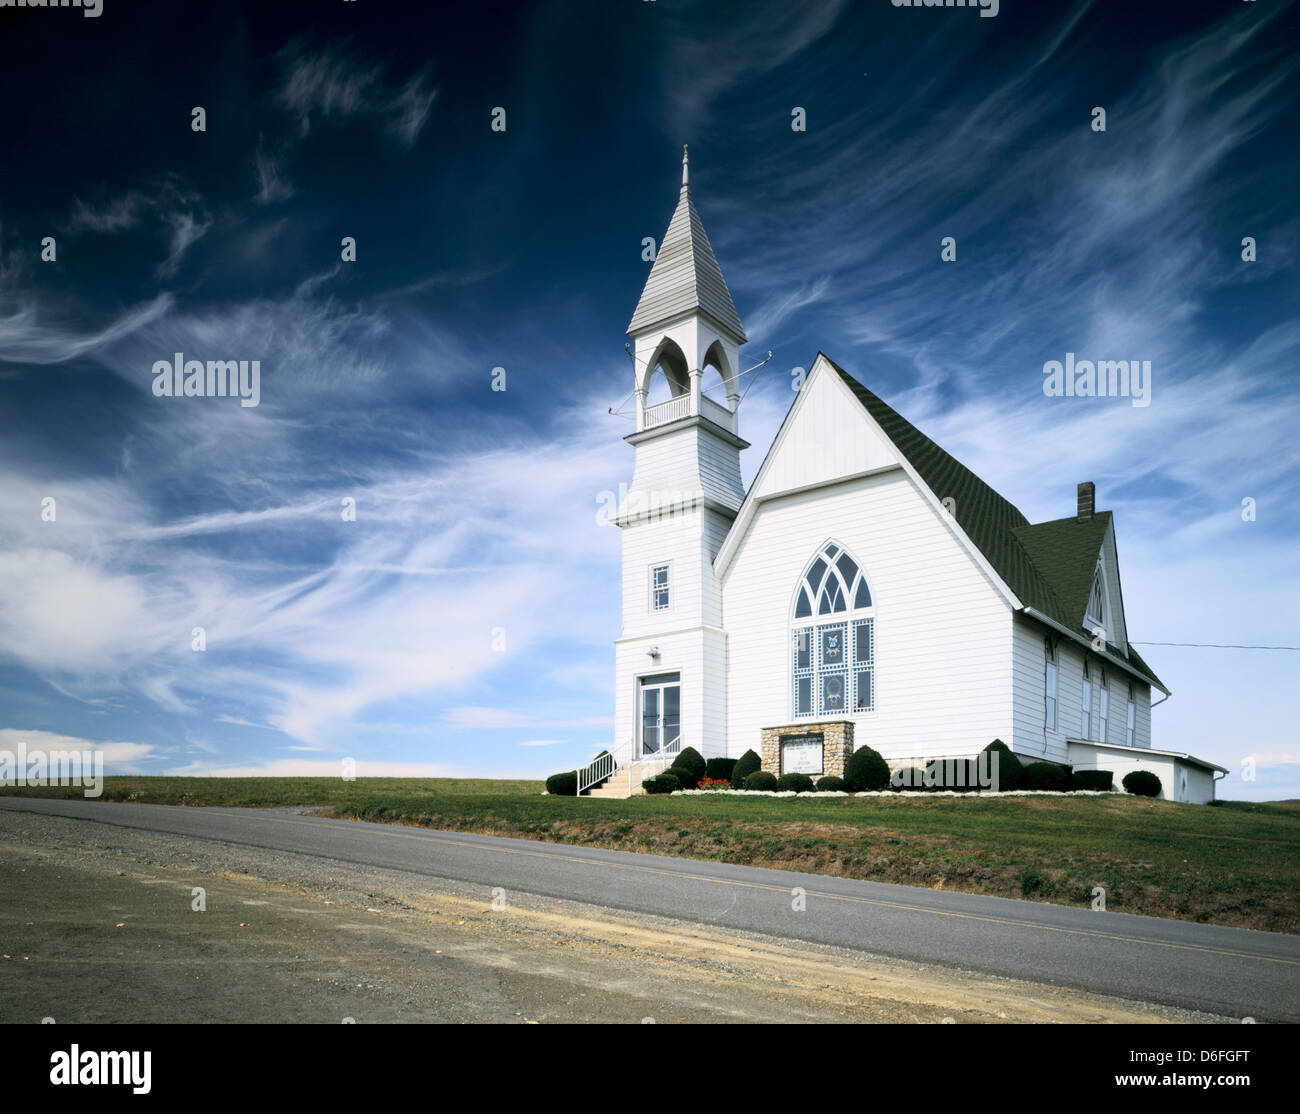 Ebenezer Vereinigte Methodistische Kirche, Ostpunkt, Pennsyvlania. Einfache weiße Kirche steht Wächter vor einem klaren blauen Himmel. Stockfoto